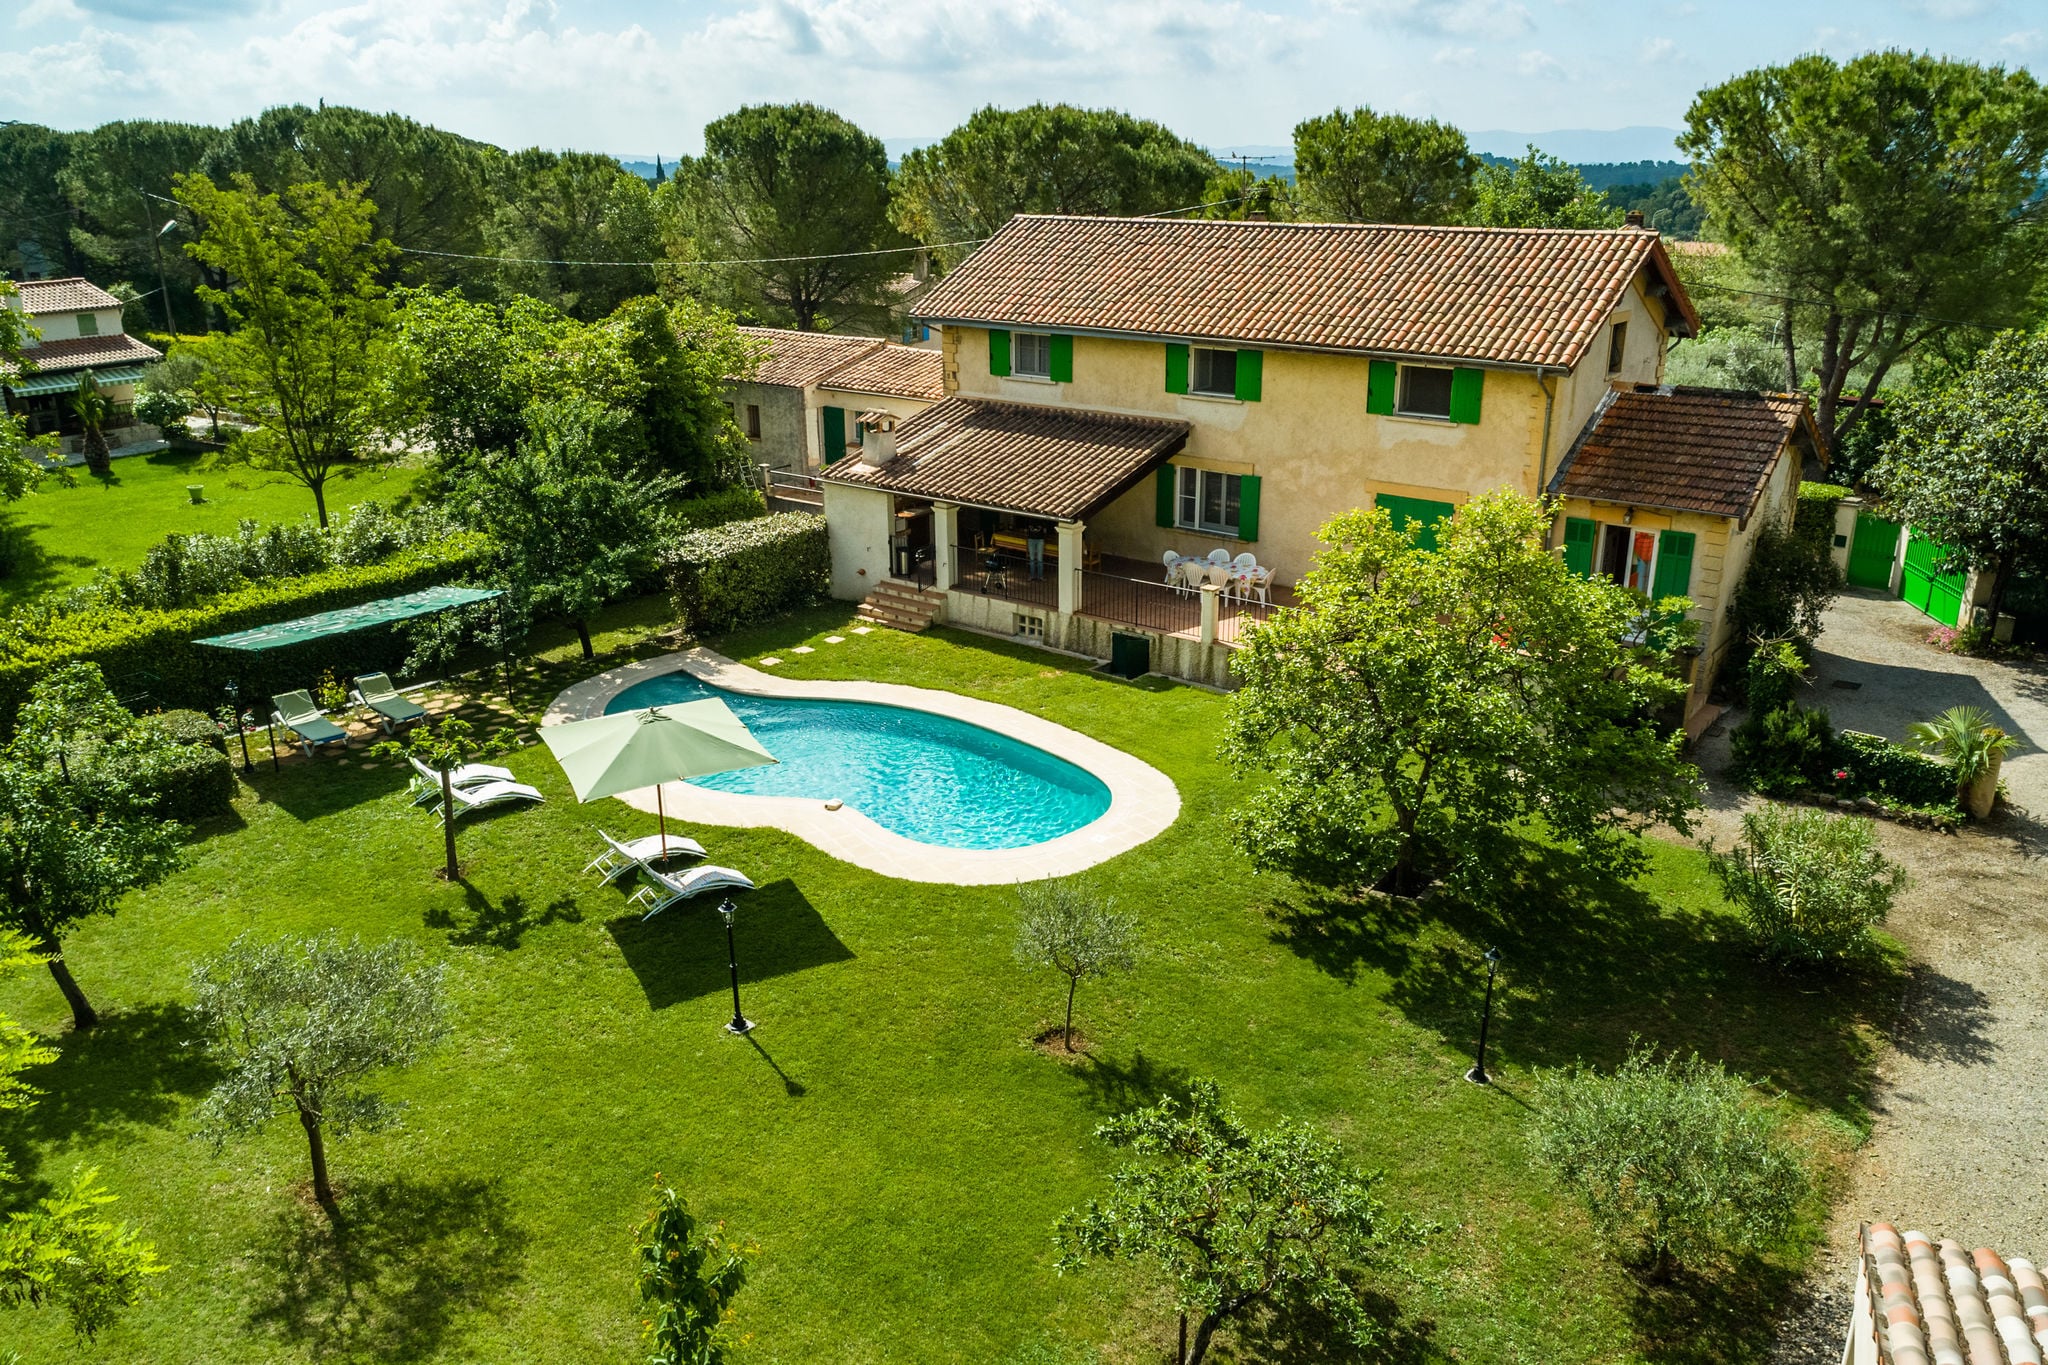 Villa de campagne historique avec piscine à Lorgues